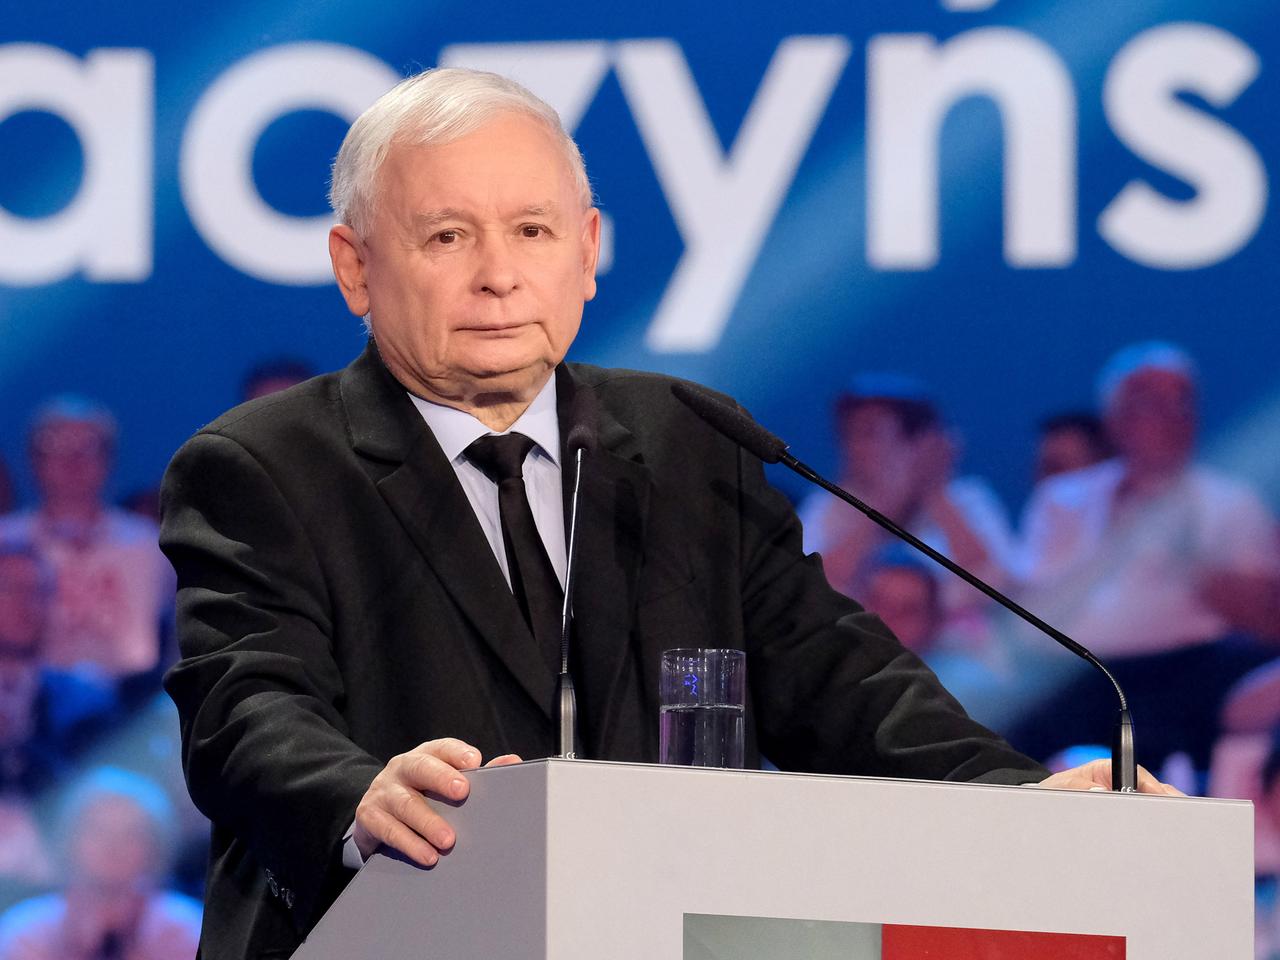 Fatalne prognozy dot. gospodarki. Kaczyński i Morawiecki ją utopią?